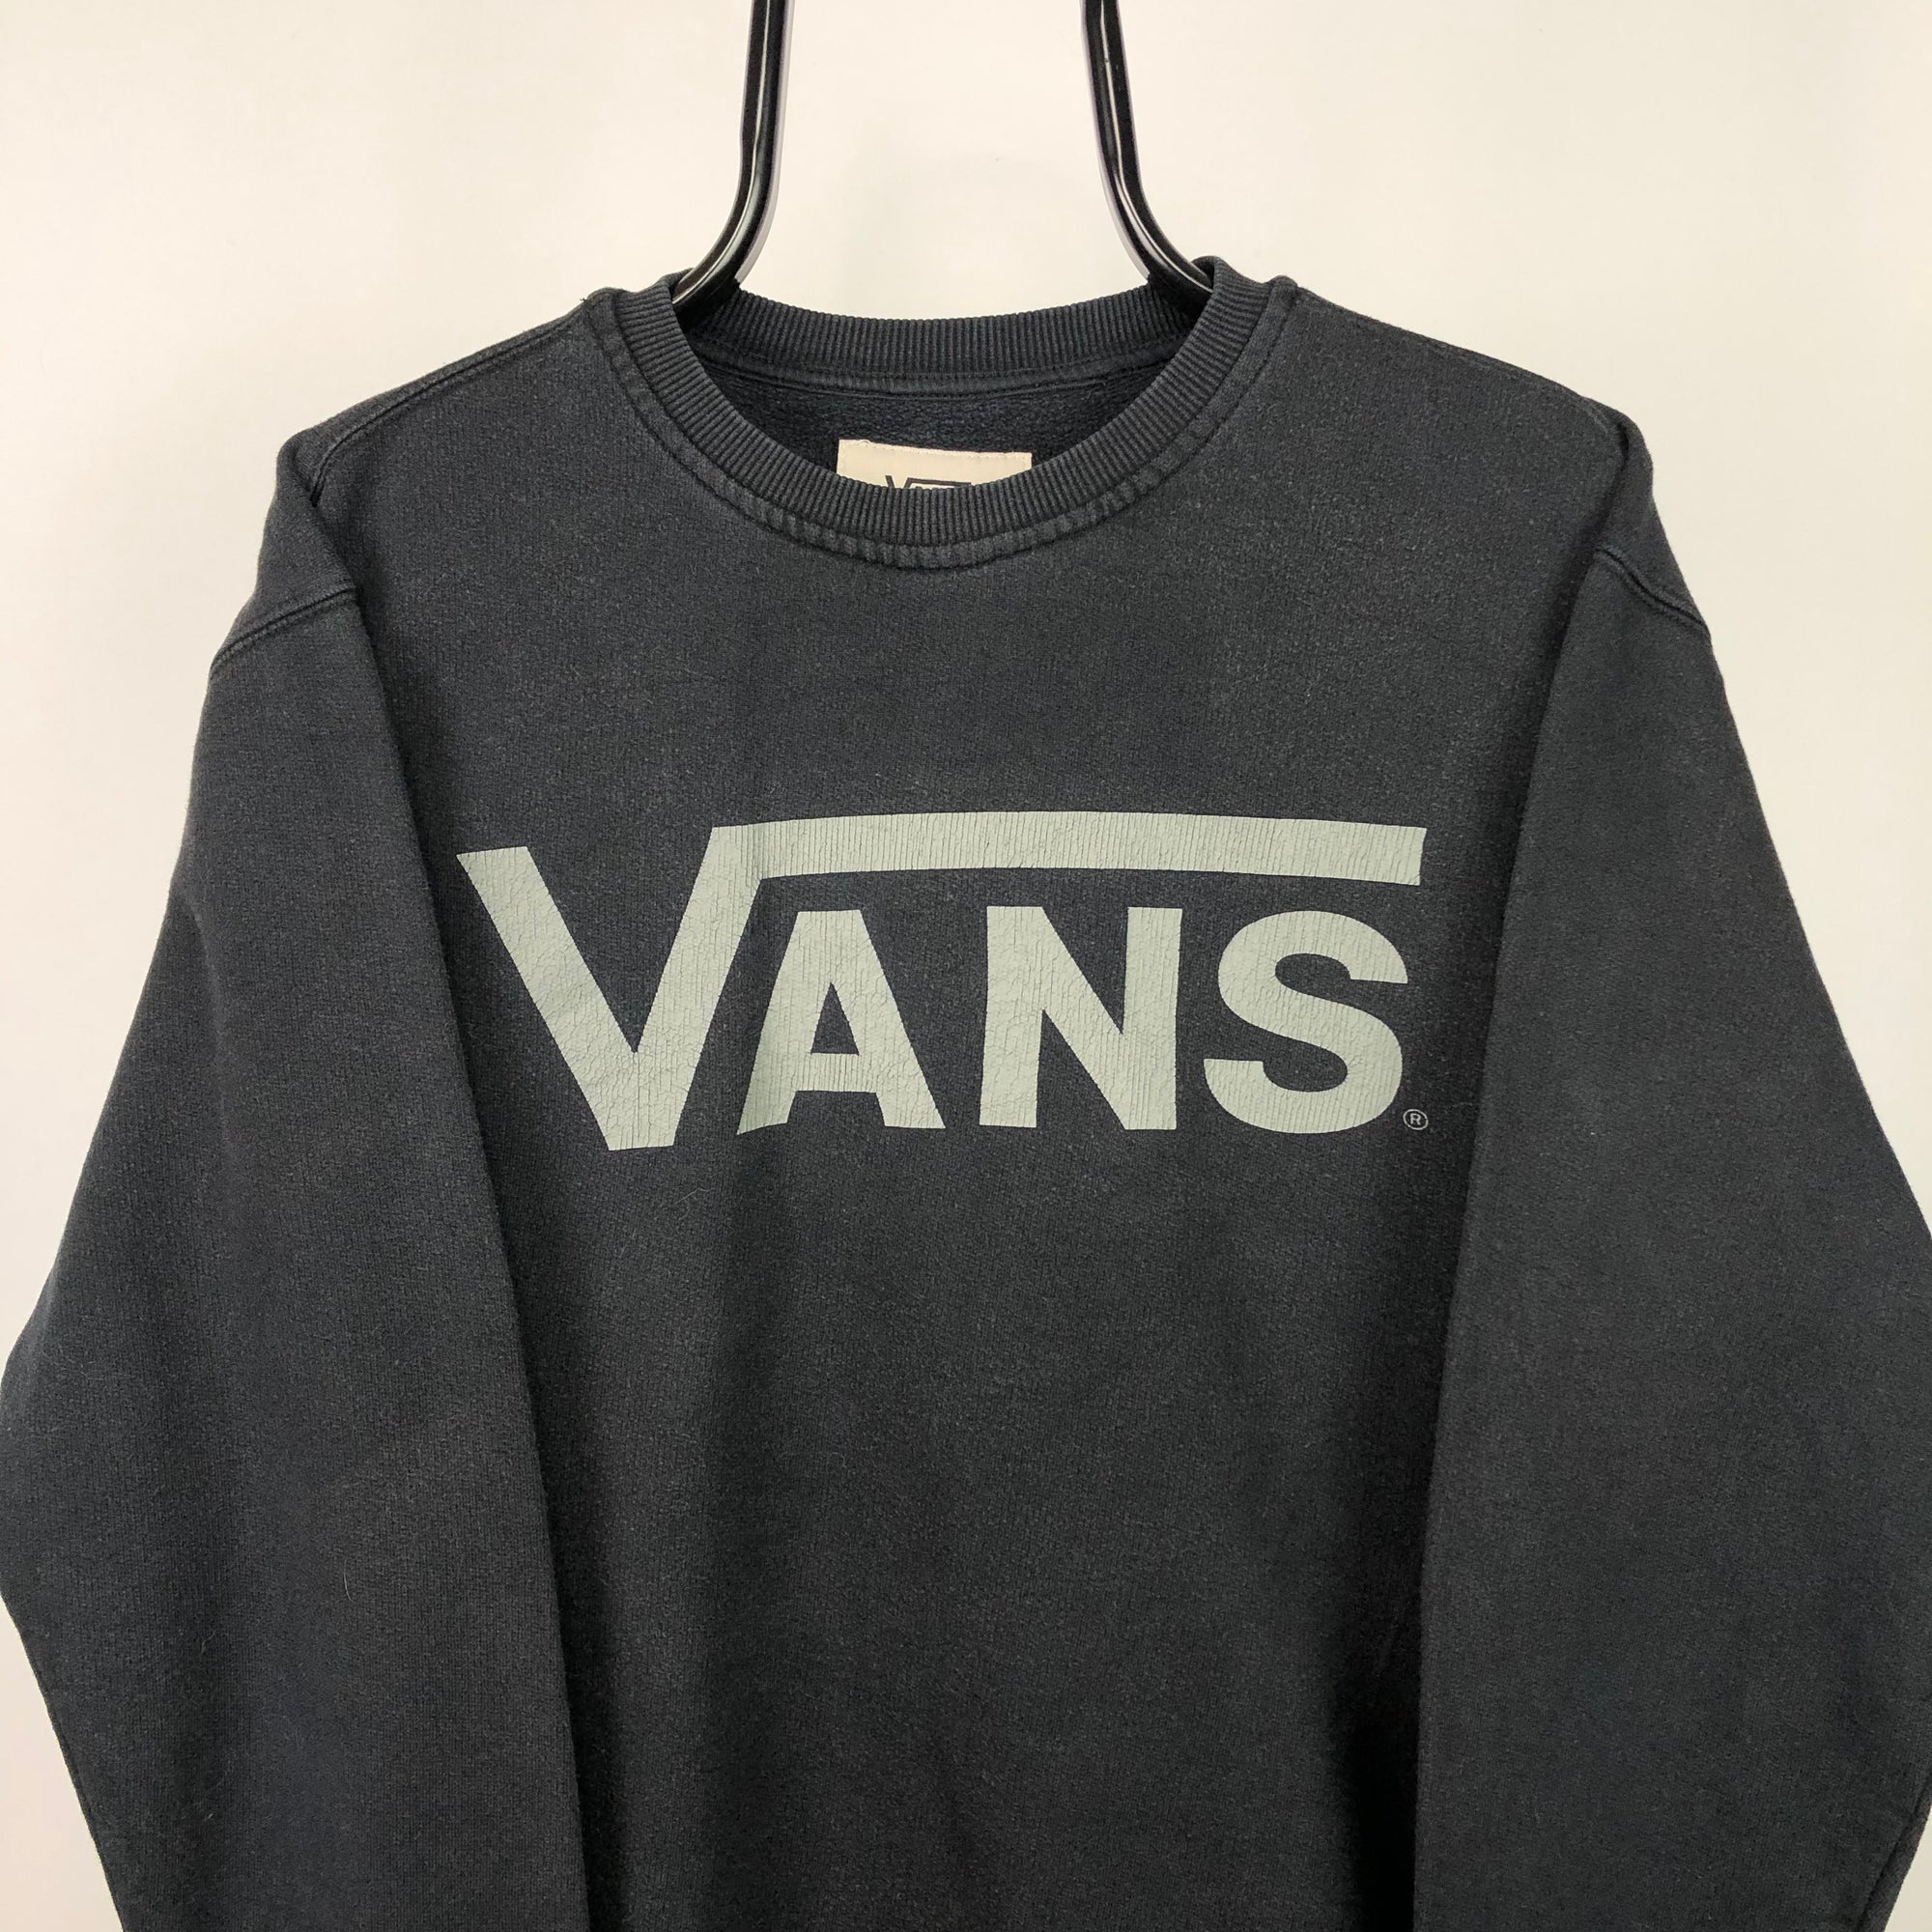 Vans Spellout Sweatshirt in Black - Men's Medium/Women's Large